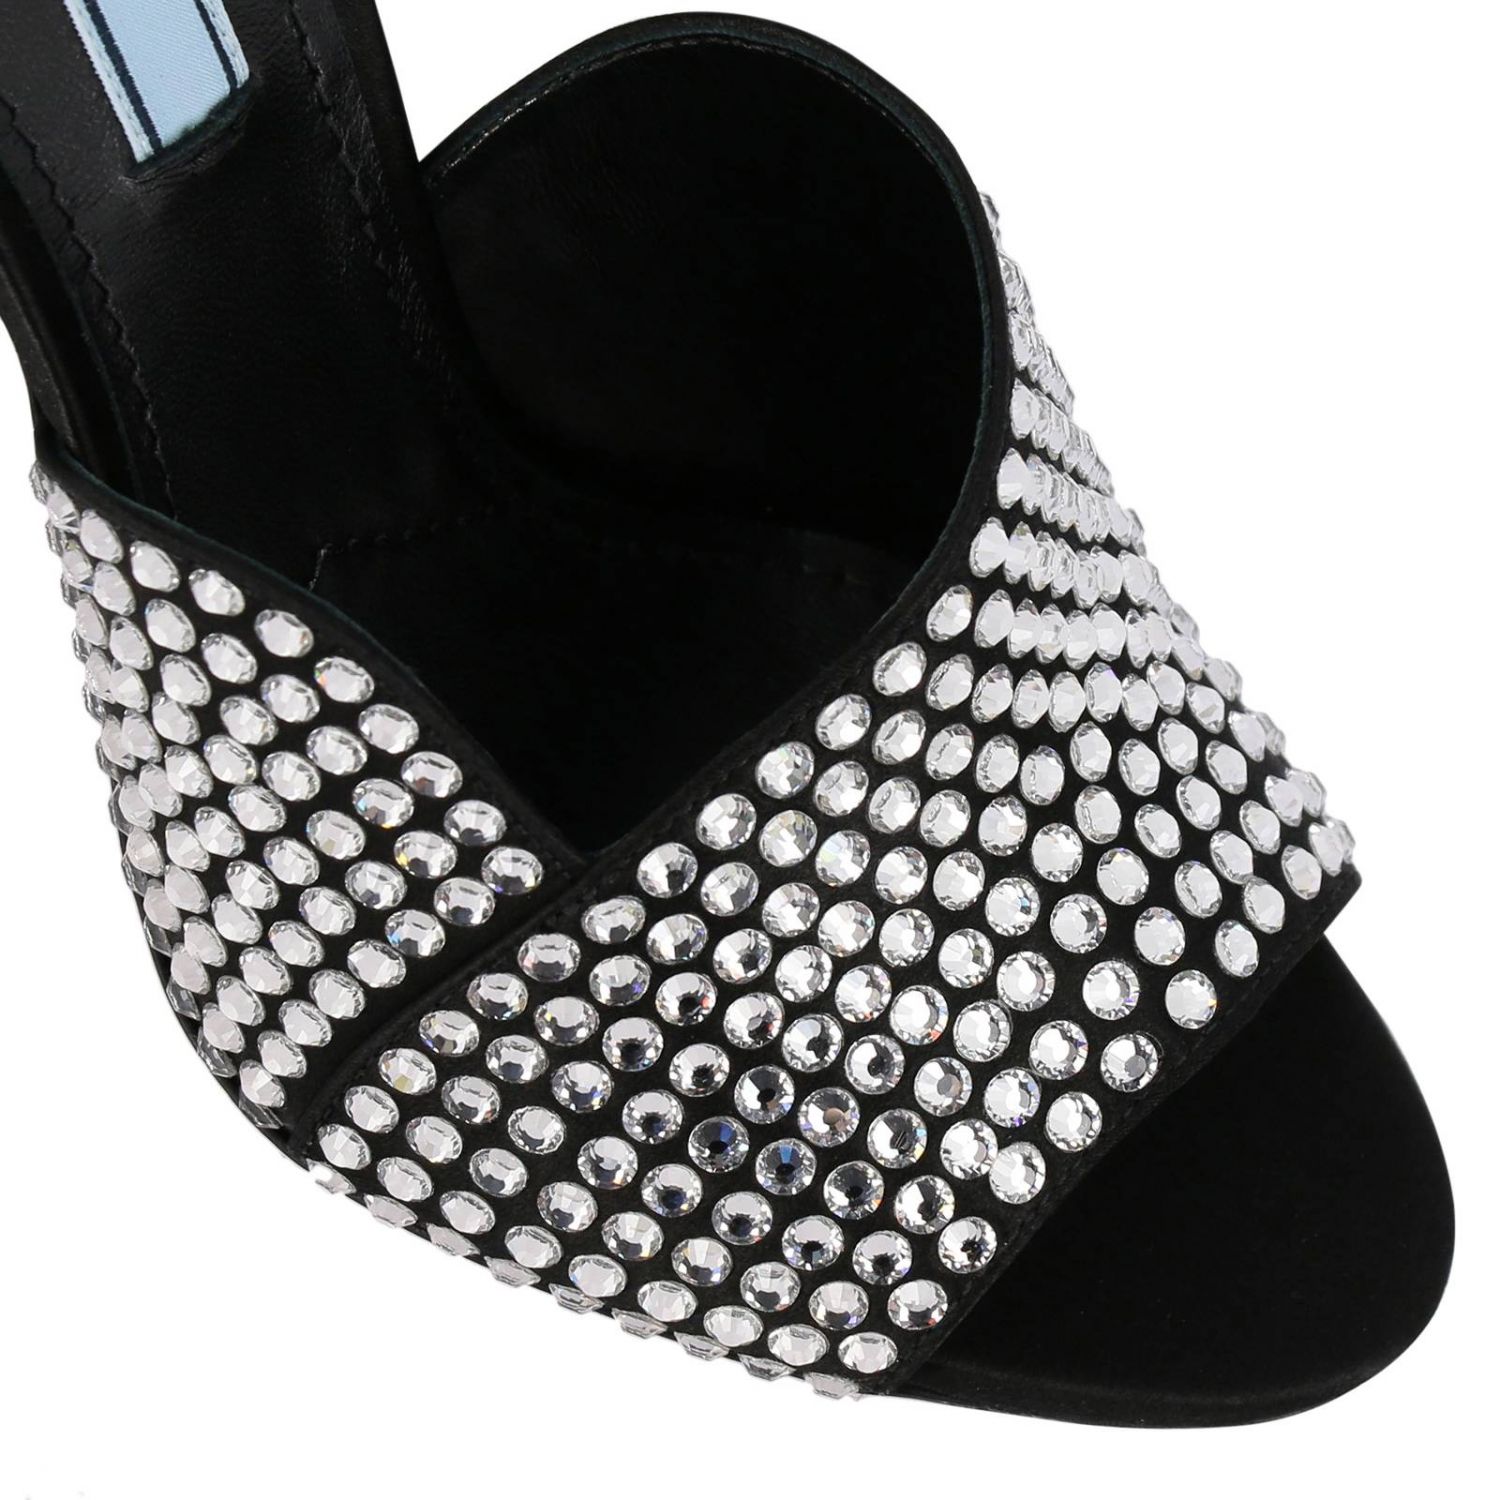 Босоножки на каблуке Prada: Сандалии Prada с открытым носком и кристаллами all over черный 4